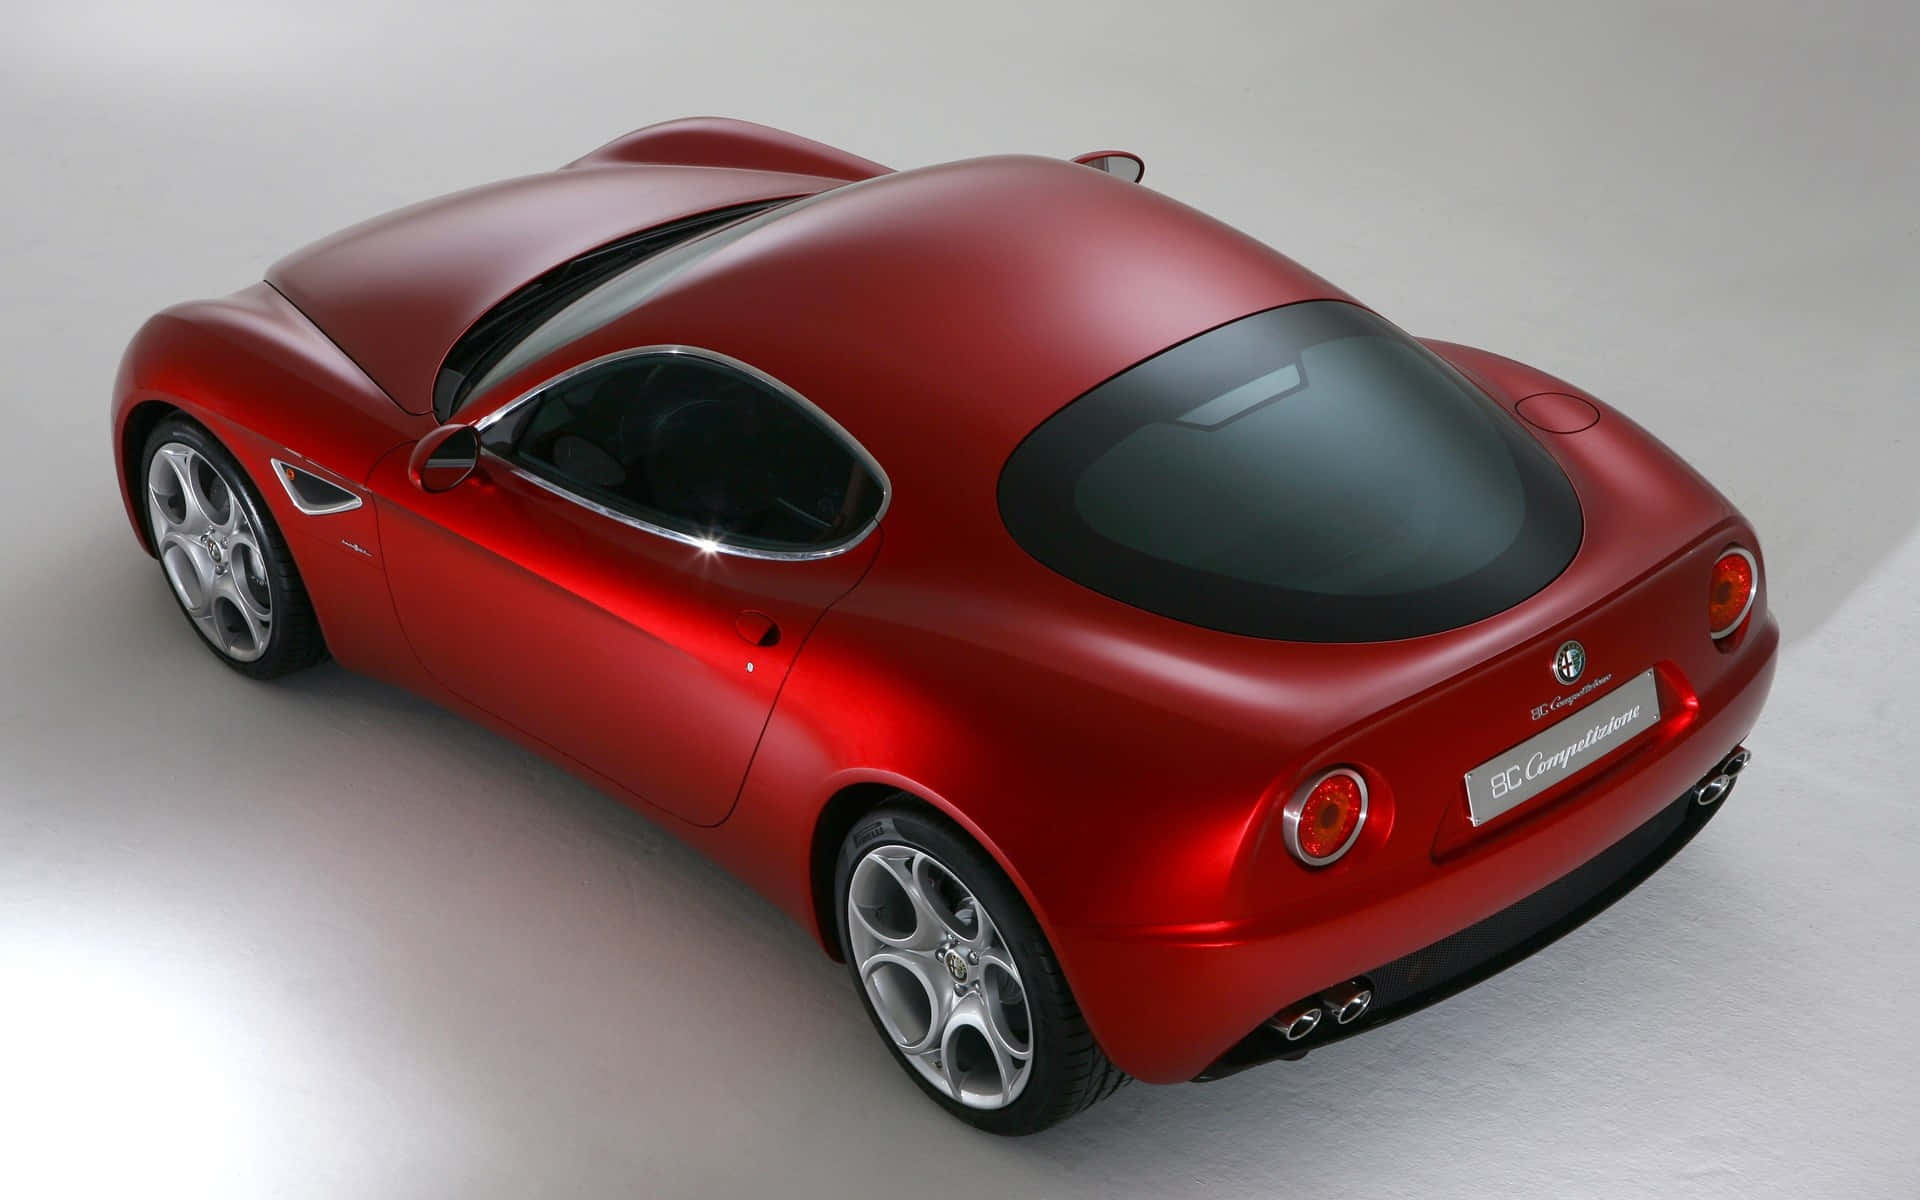 Stunning Alfa Romeo 8c Competizione in Vibrant Red Wallpaper